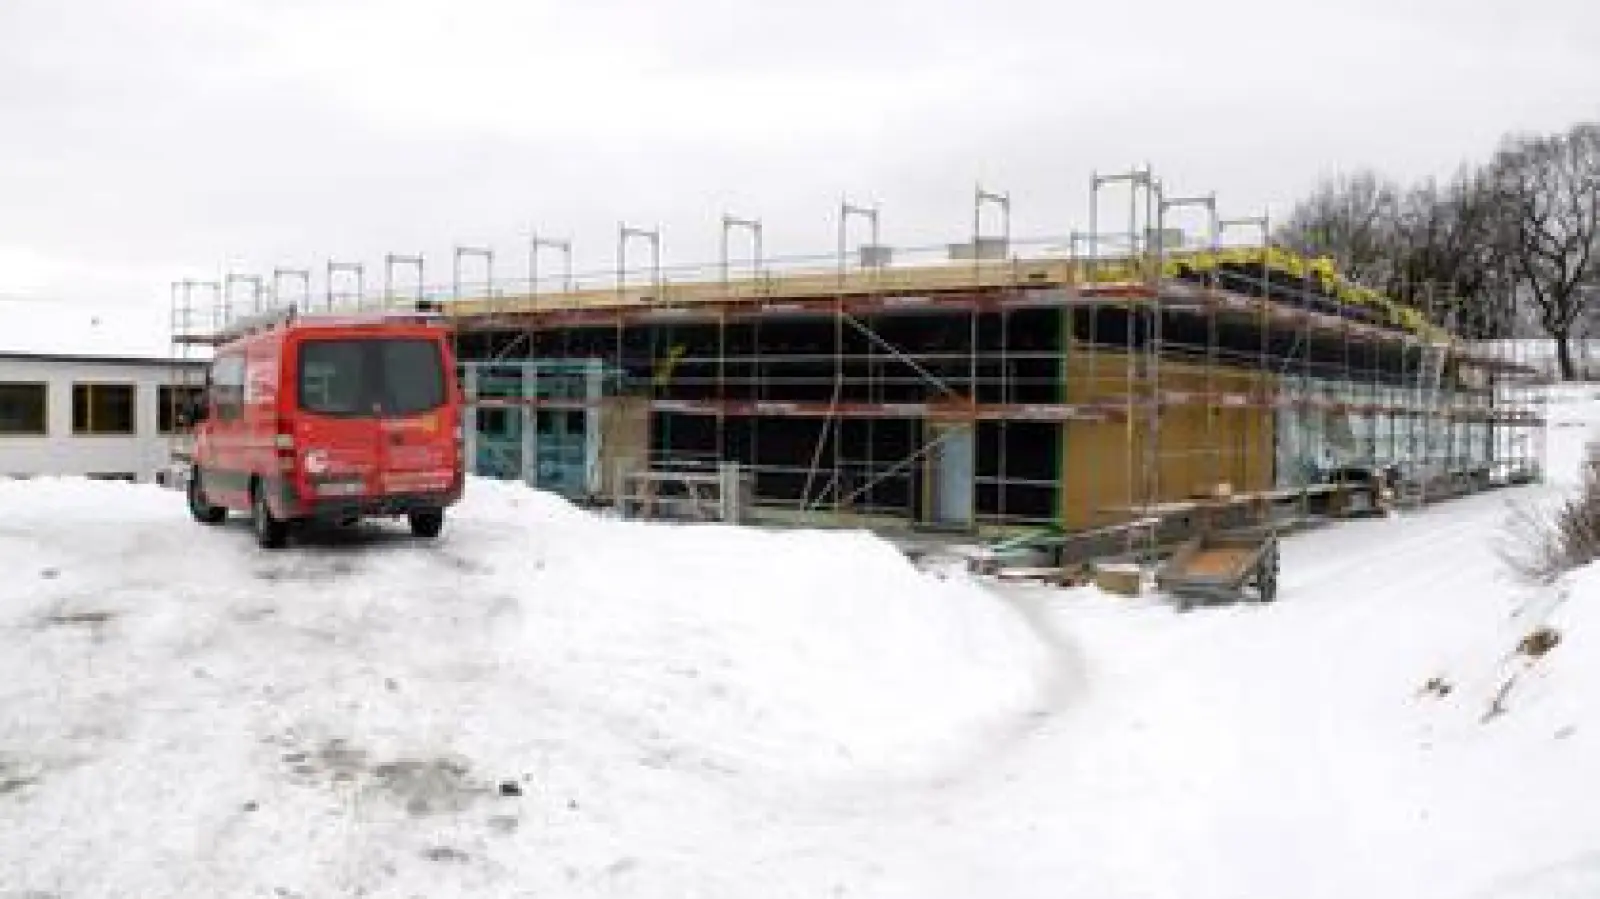 Der Bau der neuen Turnhalle   an der Realschule in Bergen schreitet planmäßig voran. Der Rohbau steht, der Innenausbau läuft. Zum Schuljahresbeginn 2017/18 soll sie übergeben werden. 	Foto: Josef Abt (Foto: Josef Abt)